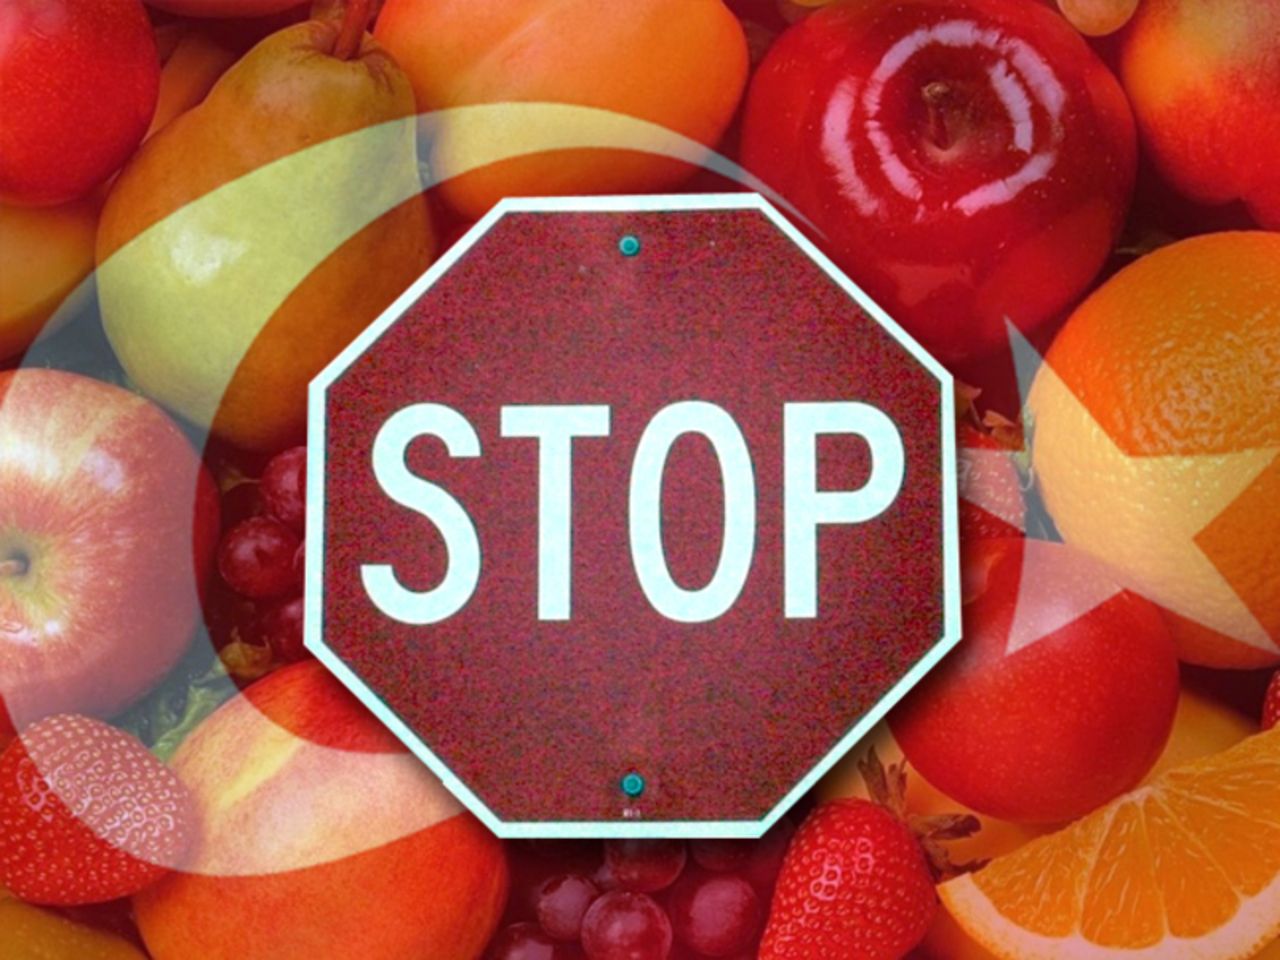 Нажми на фрукты в определенном. Фрукты запрещены. Запрет импорта. Запрет на фрукты. Запрет на ввоз товаров.